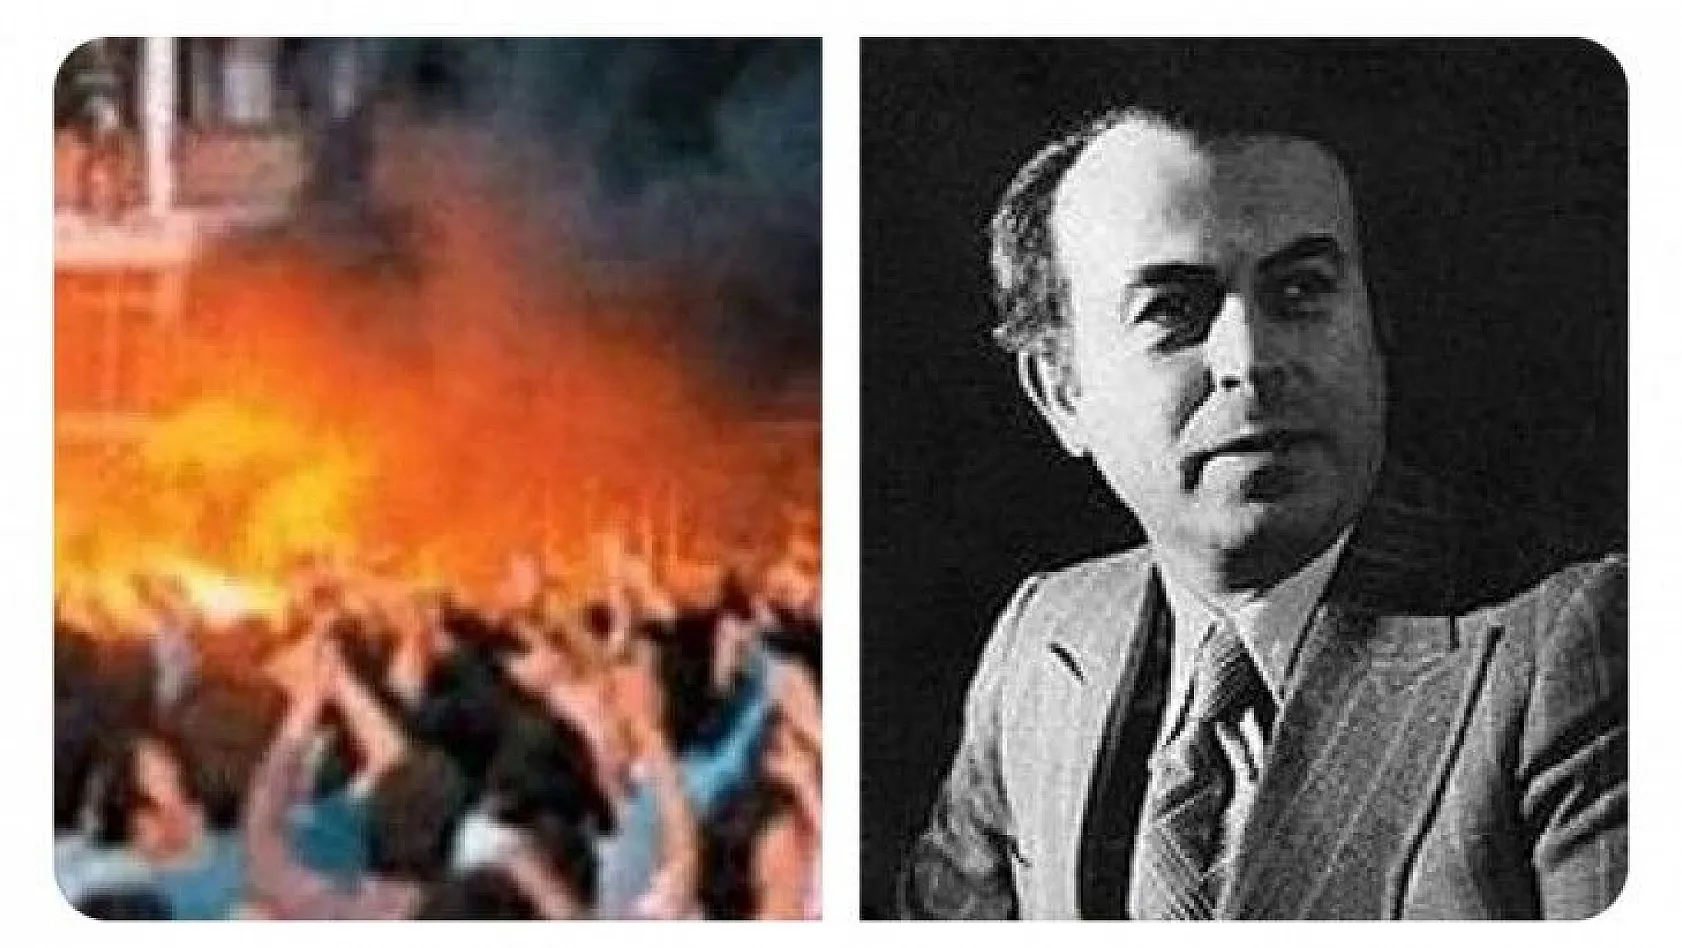 AK Partili eski vekil: Madımak'ta akrabamı da ateşe verdiler!